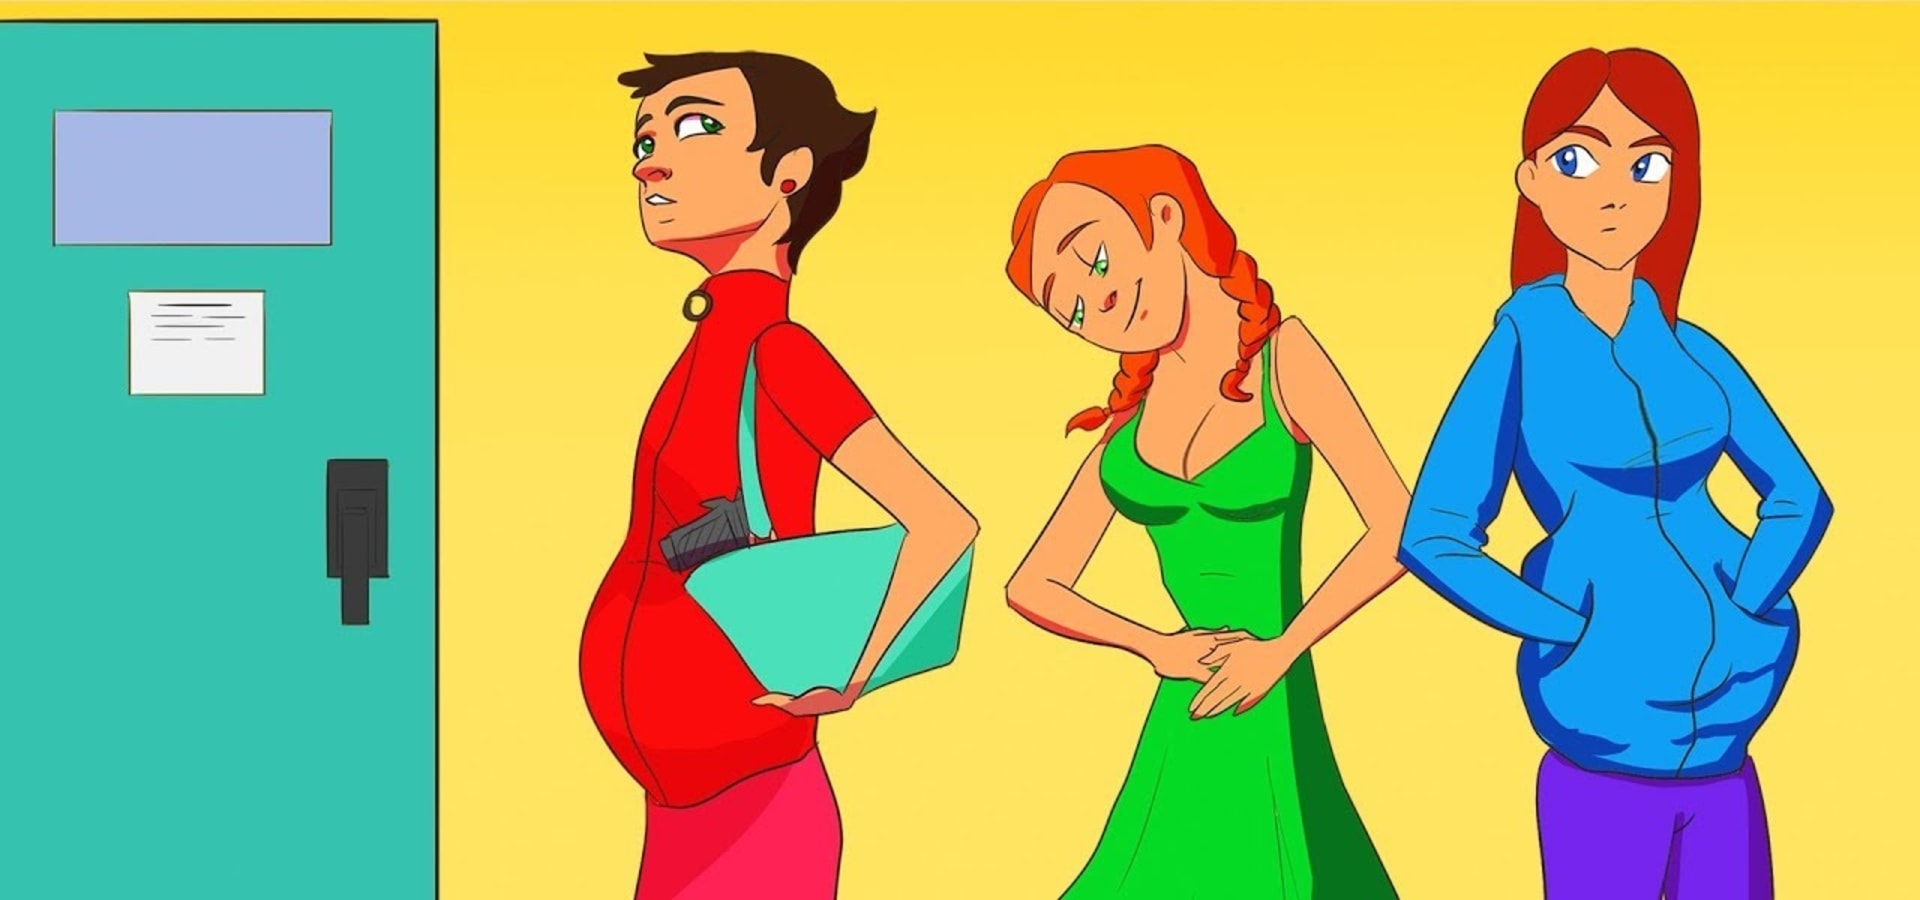 Která z nich není těhotná? 1